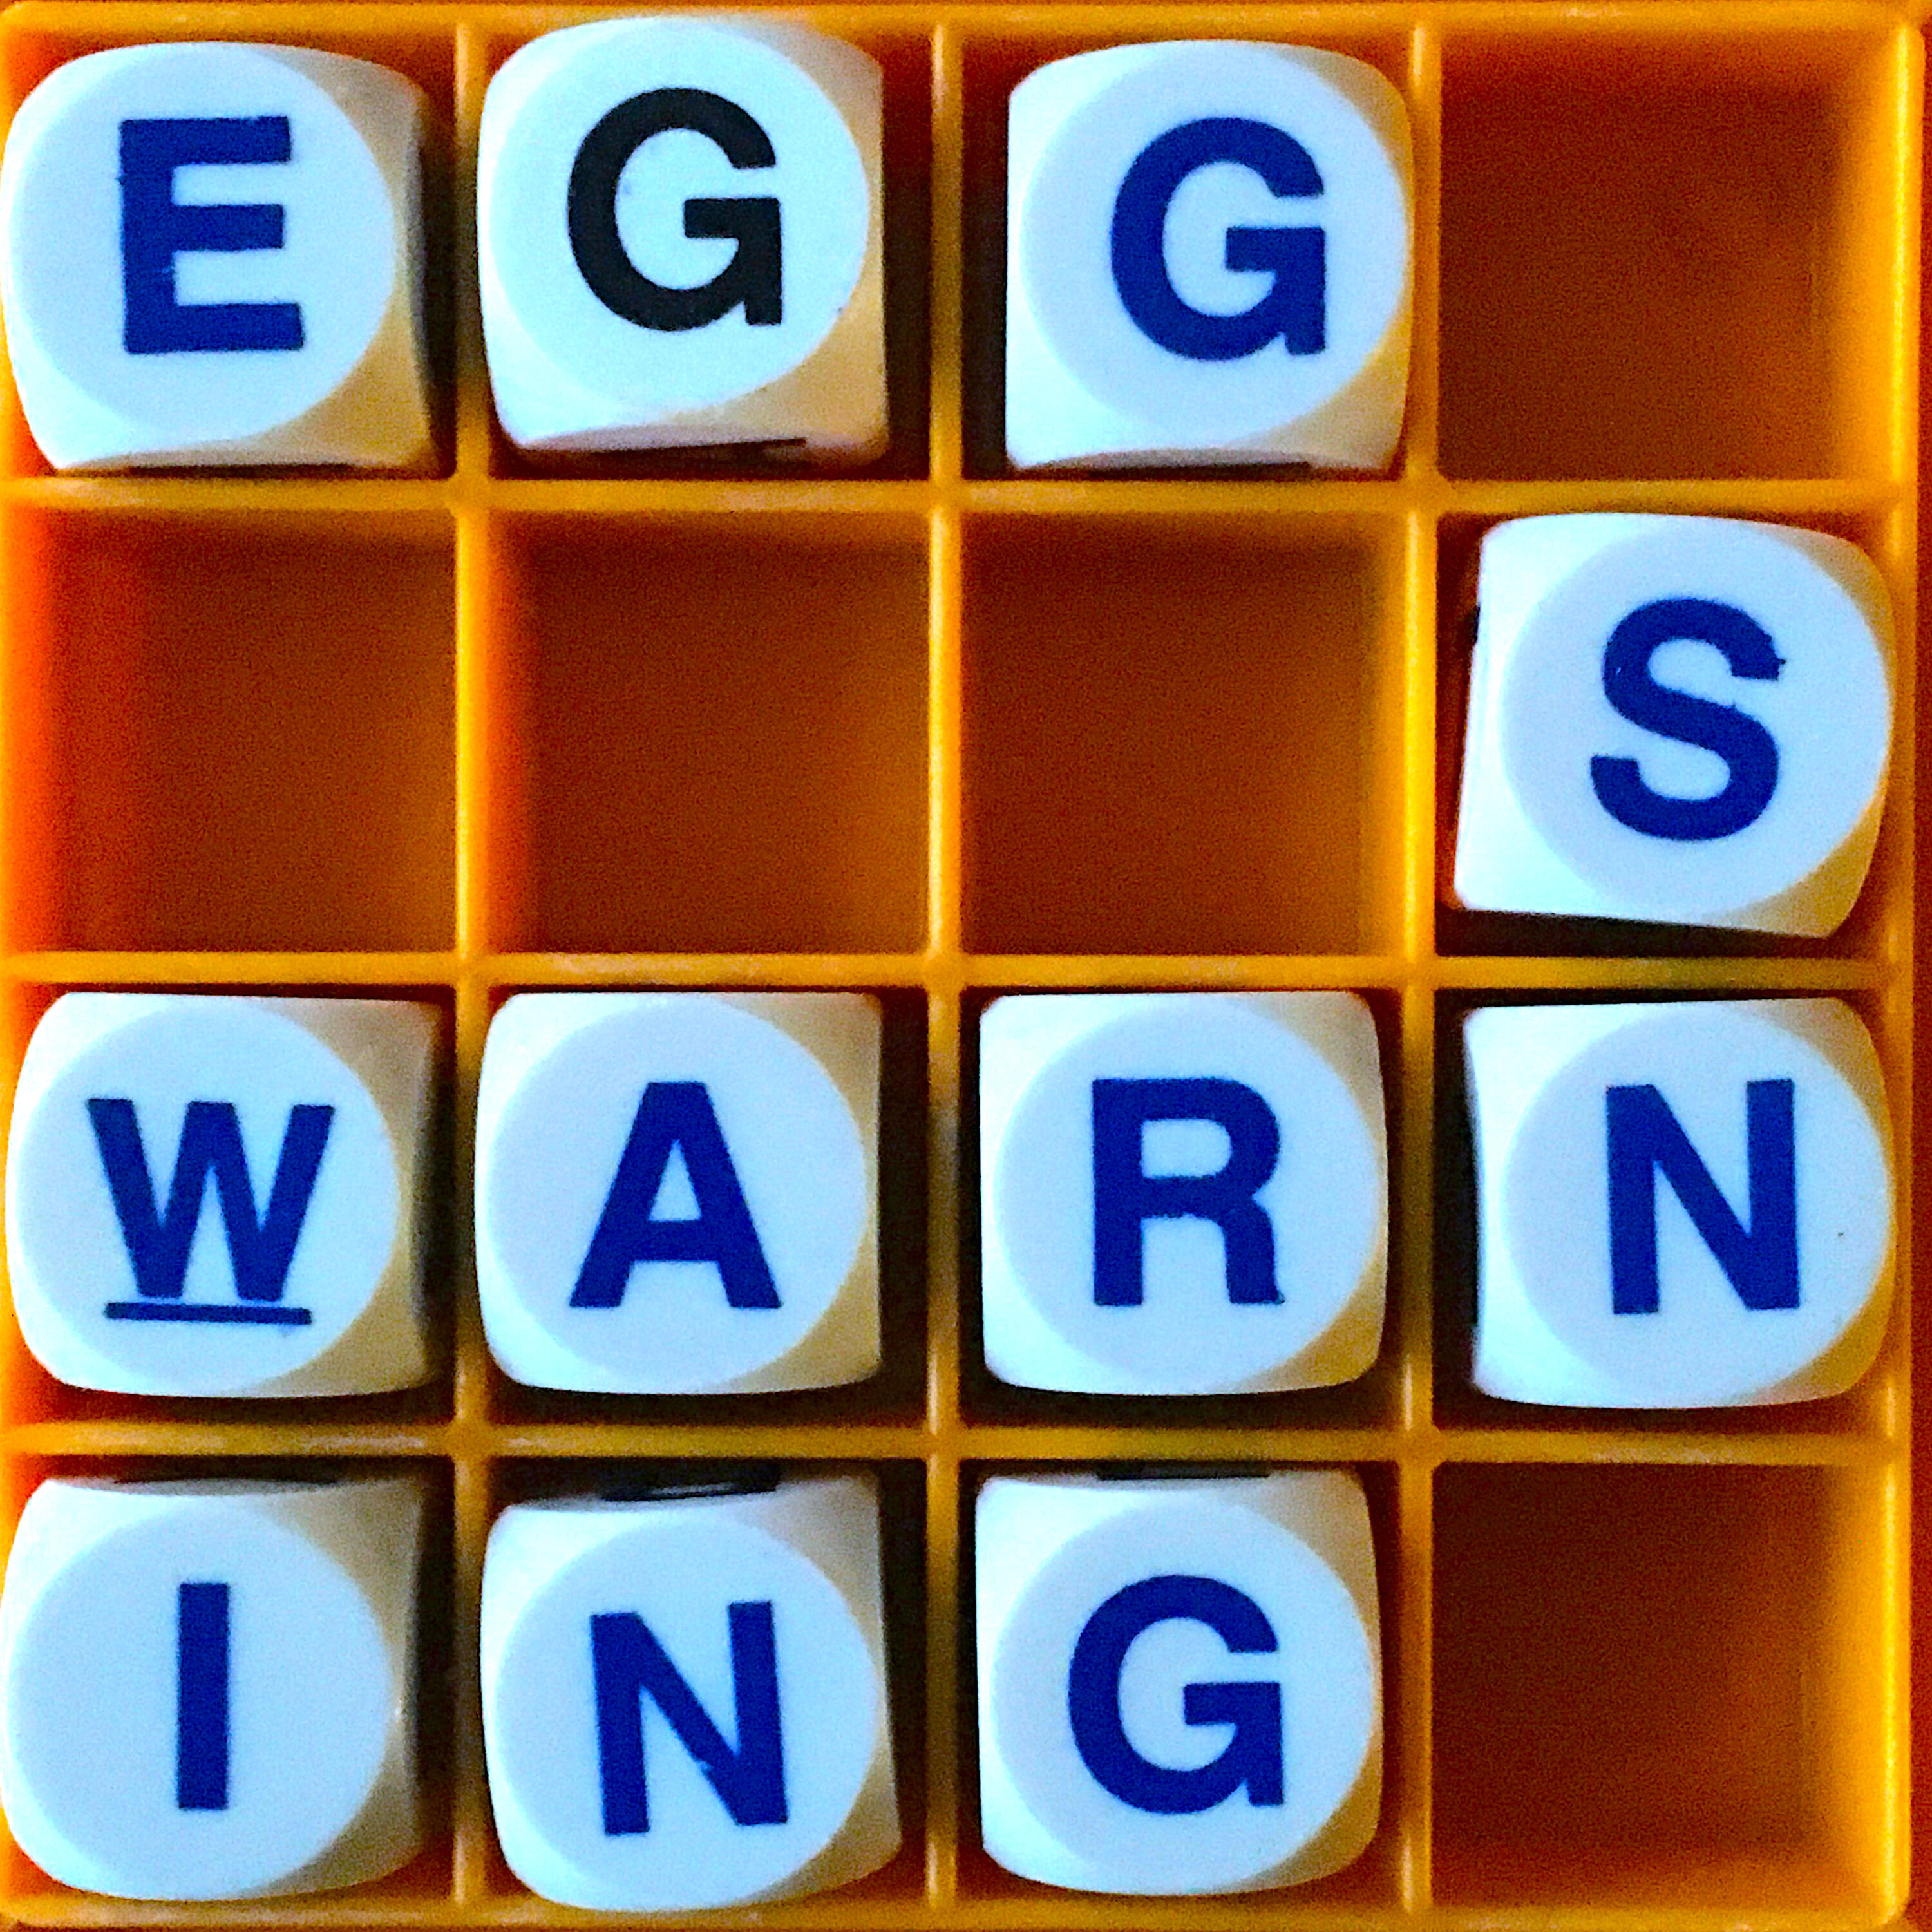 Thumbnail for "150. The Egg's Warning".